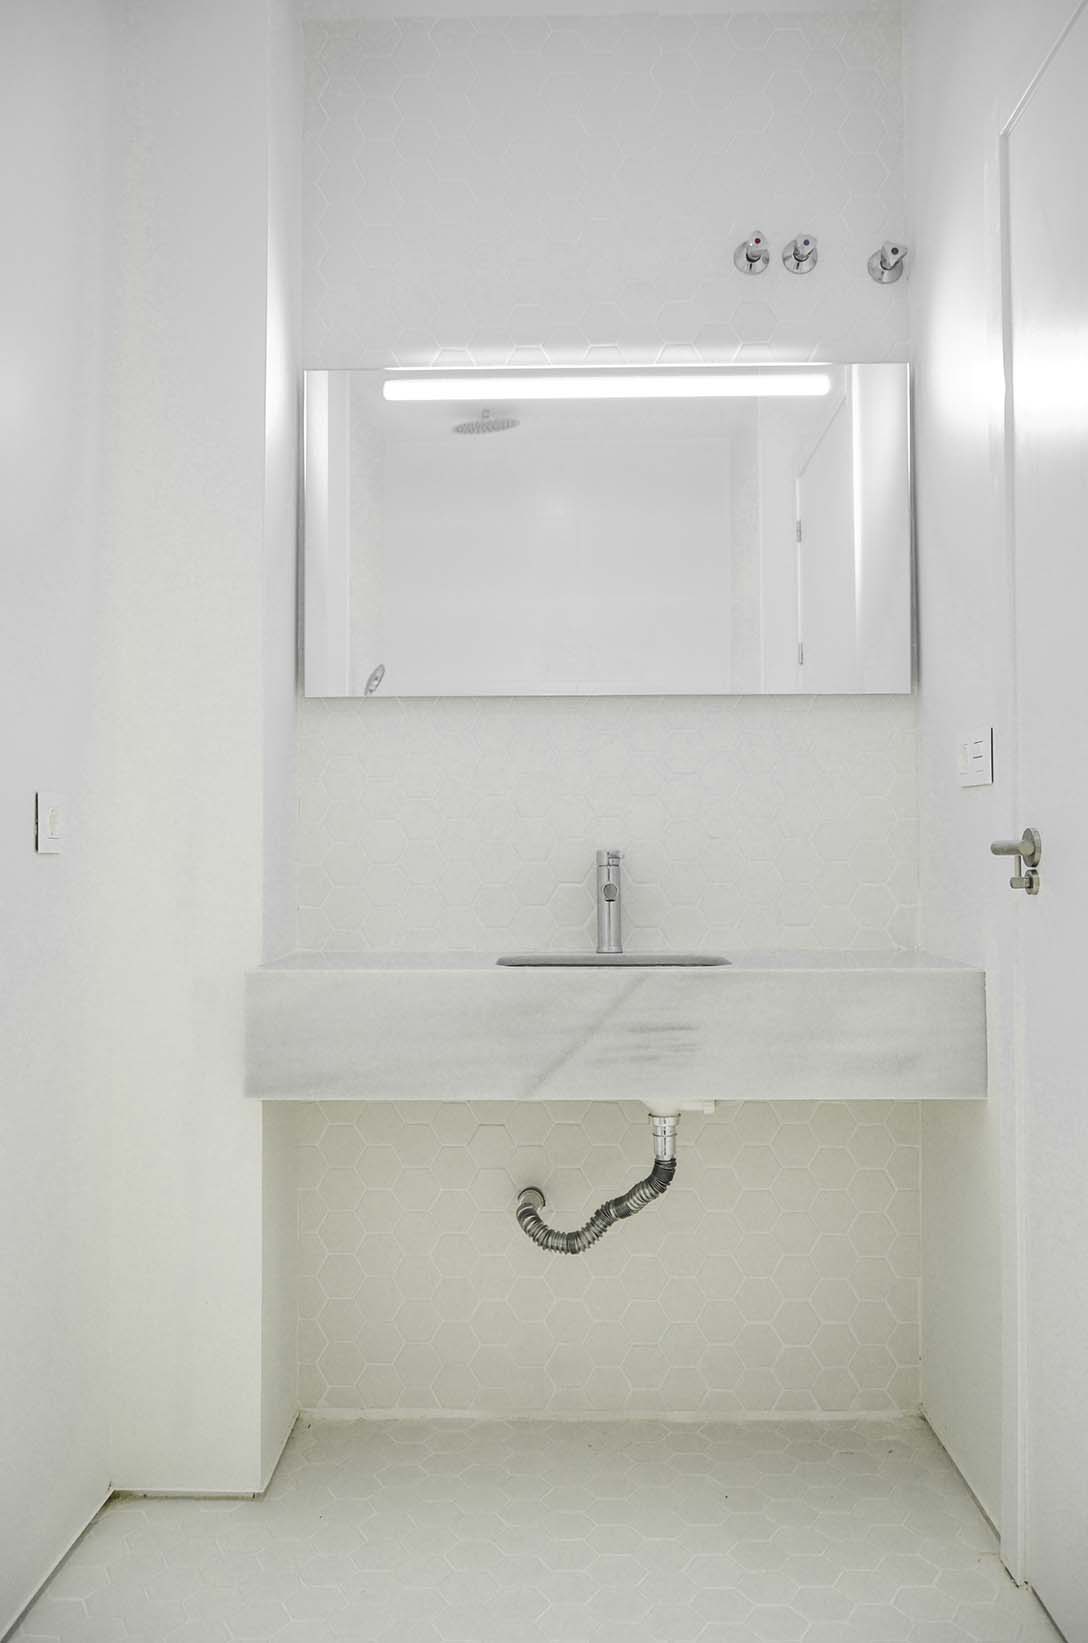 En el baño, completamente interior, las distintas texturas de los blancos utlizados le confieren una riqueza superficial que contrasta con el efecto monocromáitco de las superficies